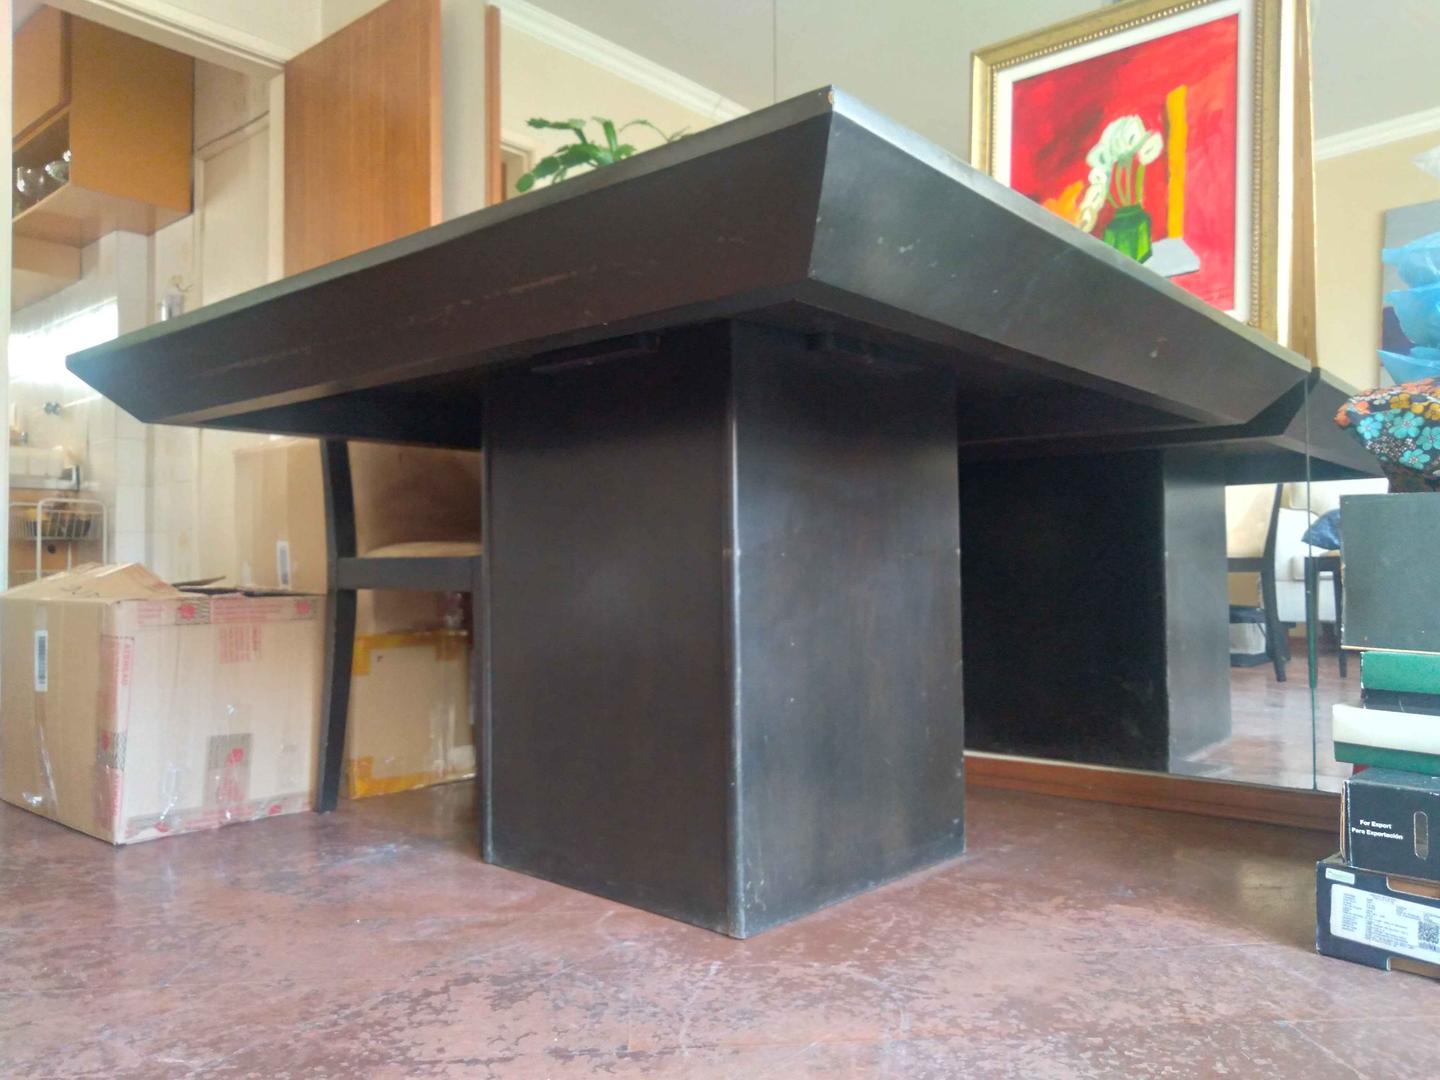 Mesa de Jantar em MDP Marrom 73 cm x 130 cm x 130 cm